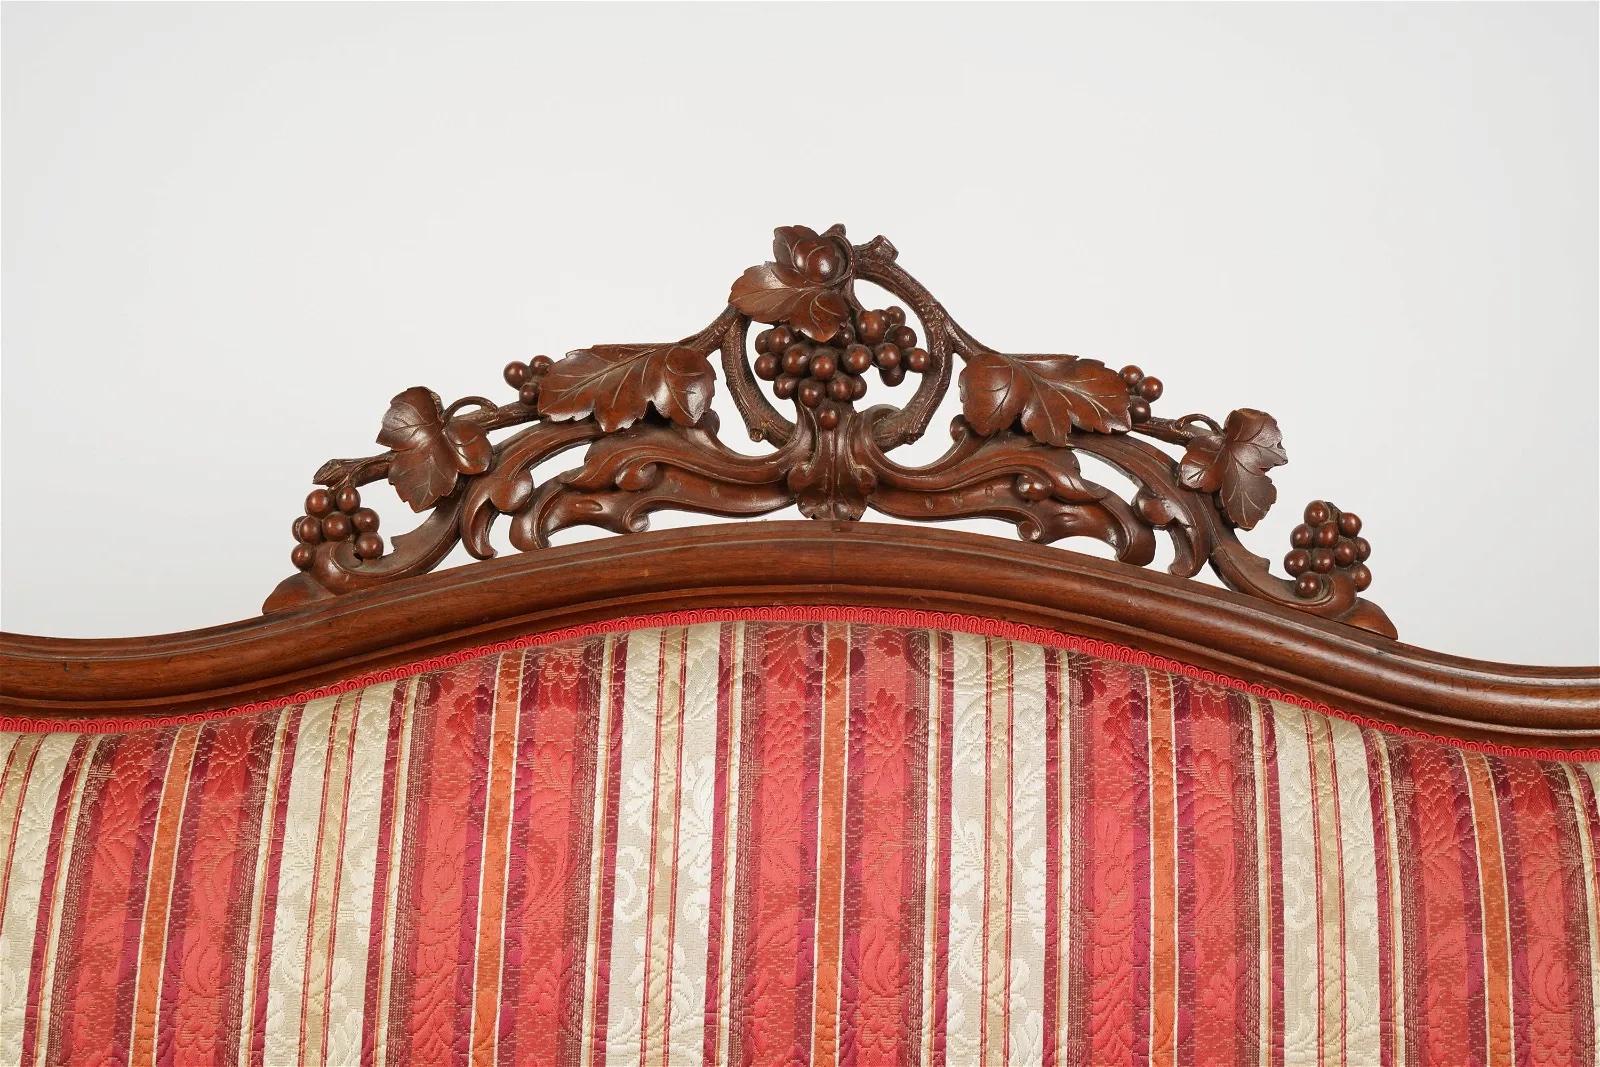 Antike amerikanische viktorianische Rokoko-Revival-Sofa mit klassischer viktorianischer  Handgeschnitzte verschnörkelte Arme und Füße und durchbrochene geschnitzte Wappenleiste. Konstruktion aus massivem Walnuss-Hartholz und handverzahnte